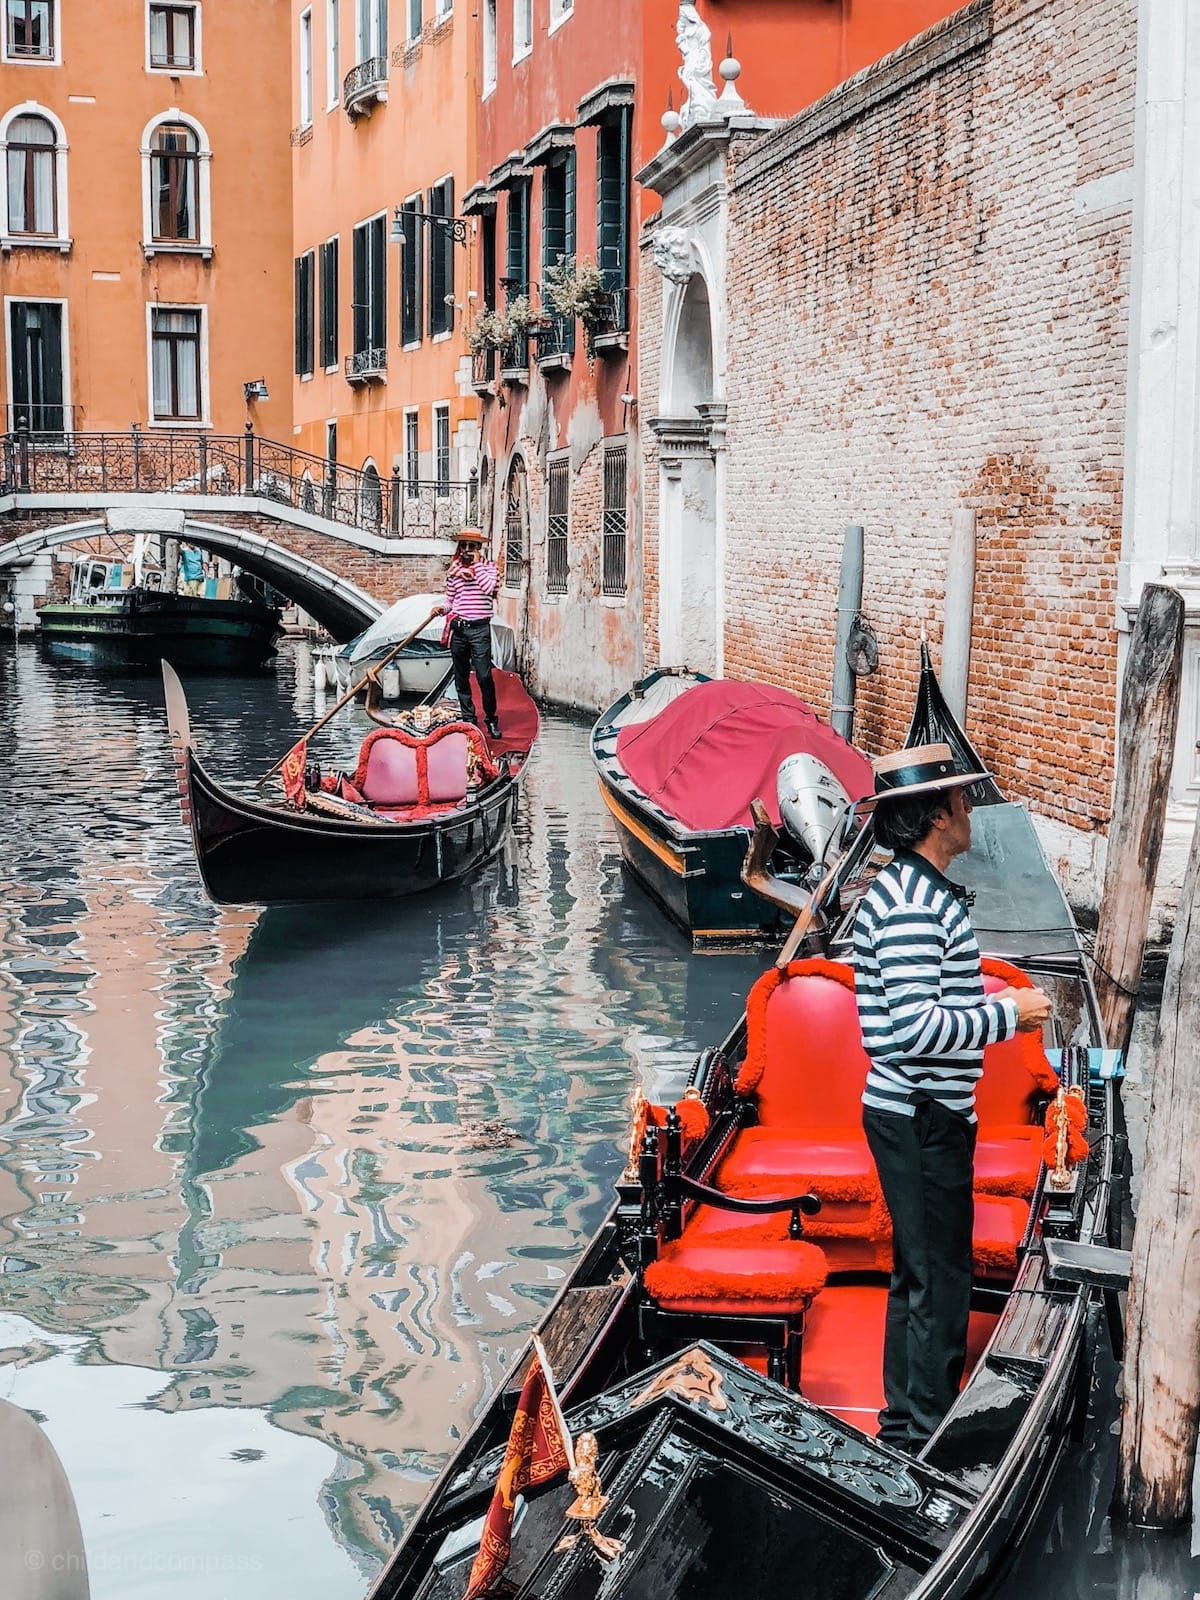 Venedig Sehenswürdigkeiten, Städtereise nach Venedig Städtetrip, Kanäle und Brücken in Venedig, Gondeln, Urlaub in Italien